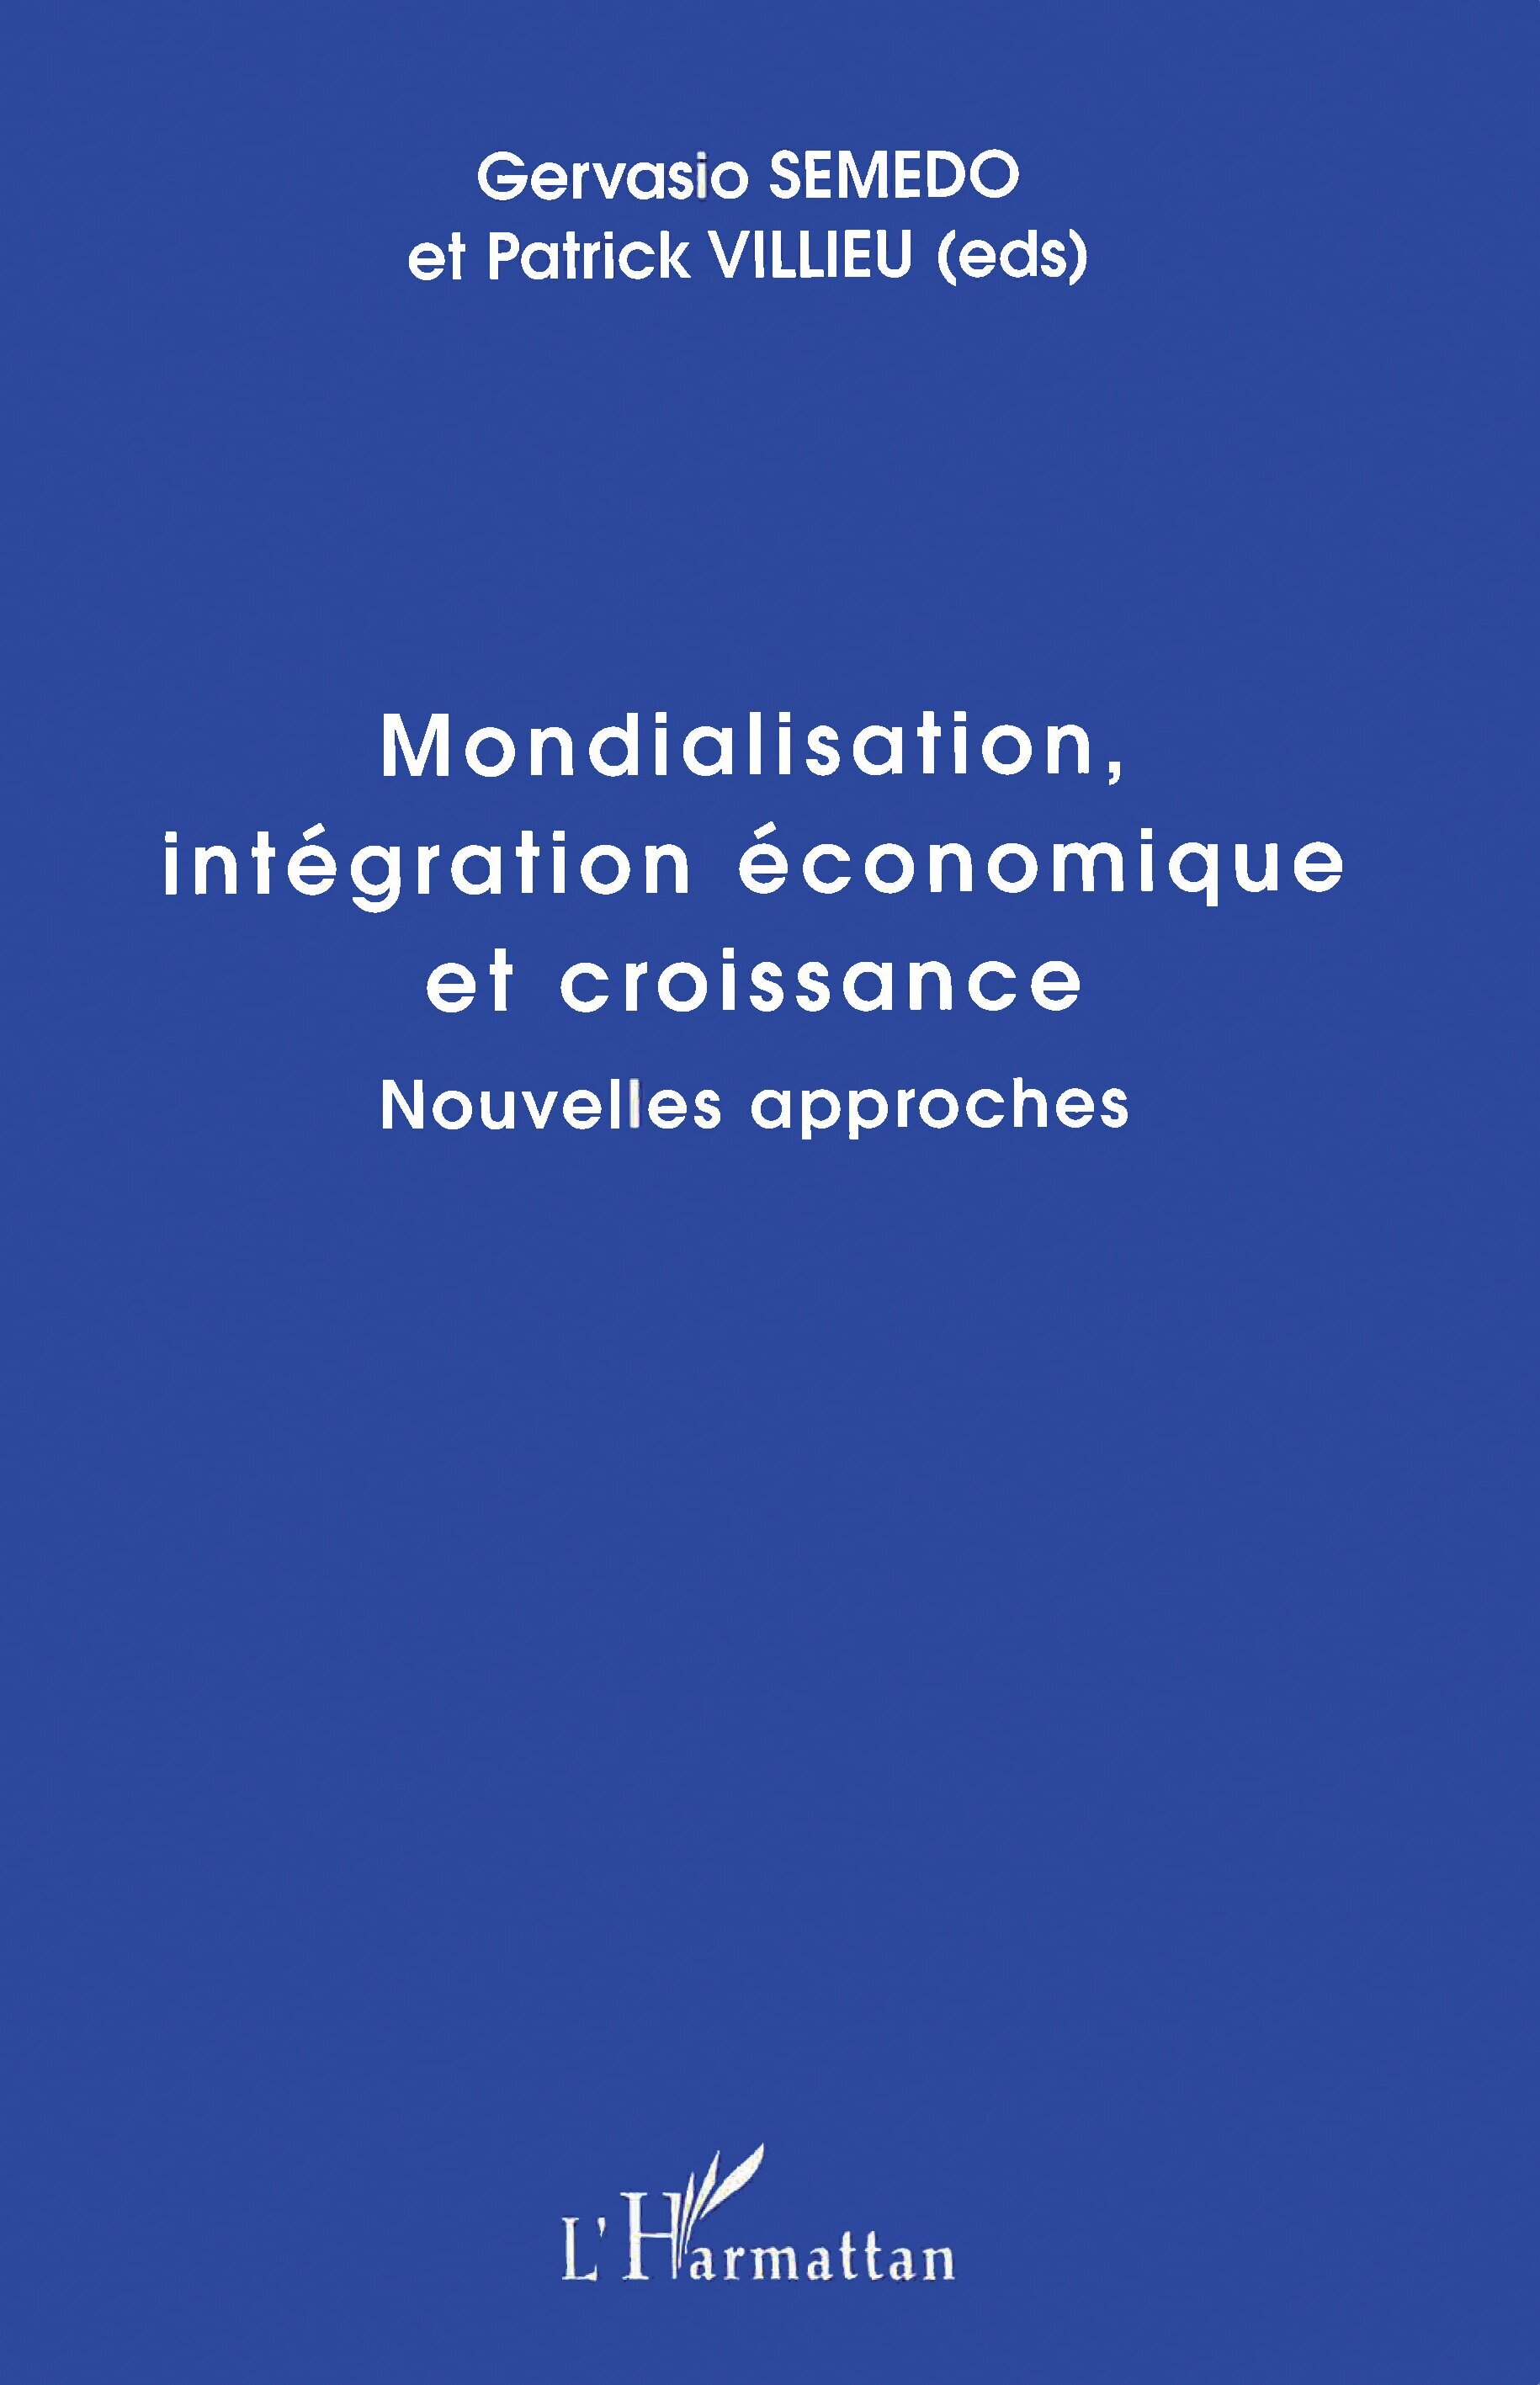 MONDIALISATION, INTÉGRATION ÉCONOMIQUE ET CROISSANCE, Nouvelles approches (9782738473776-front-cover)